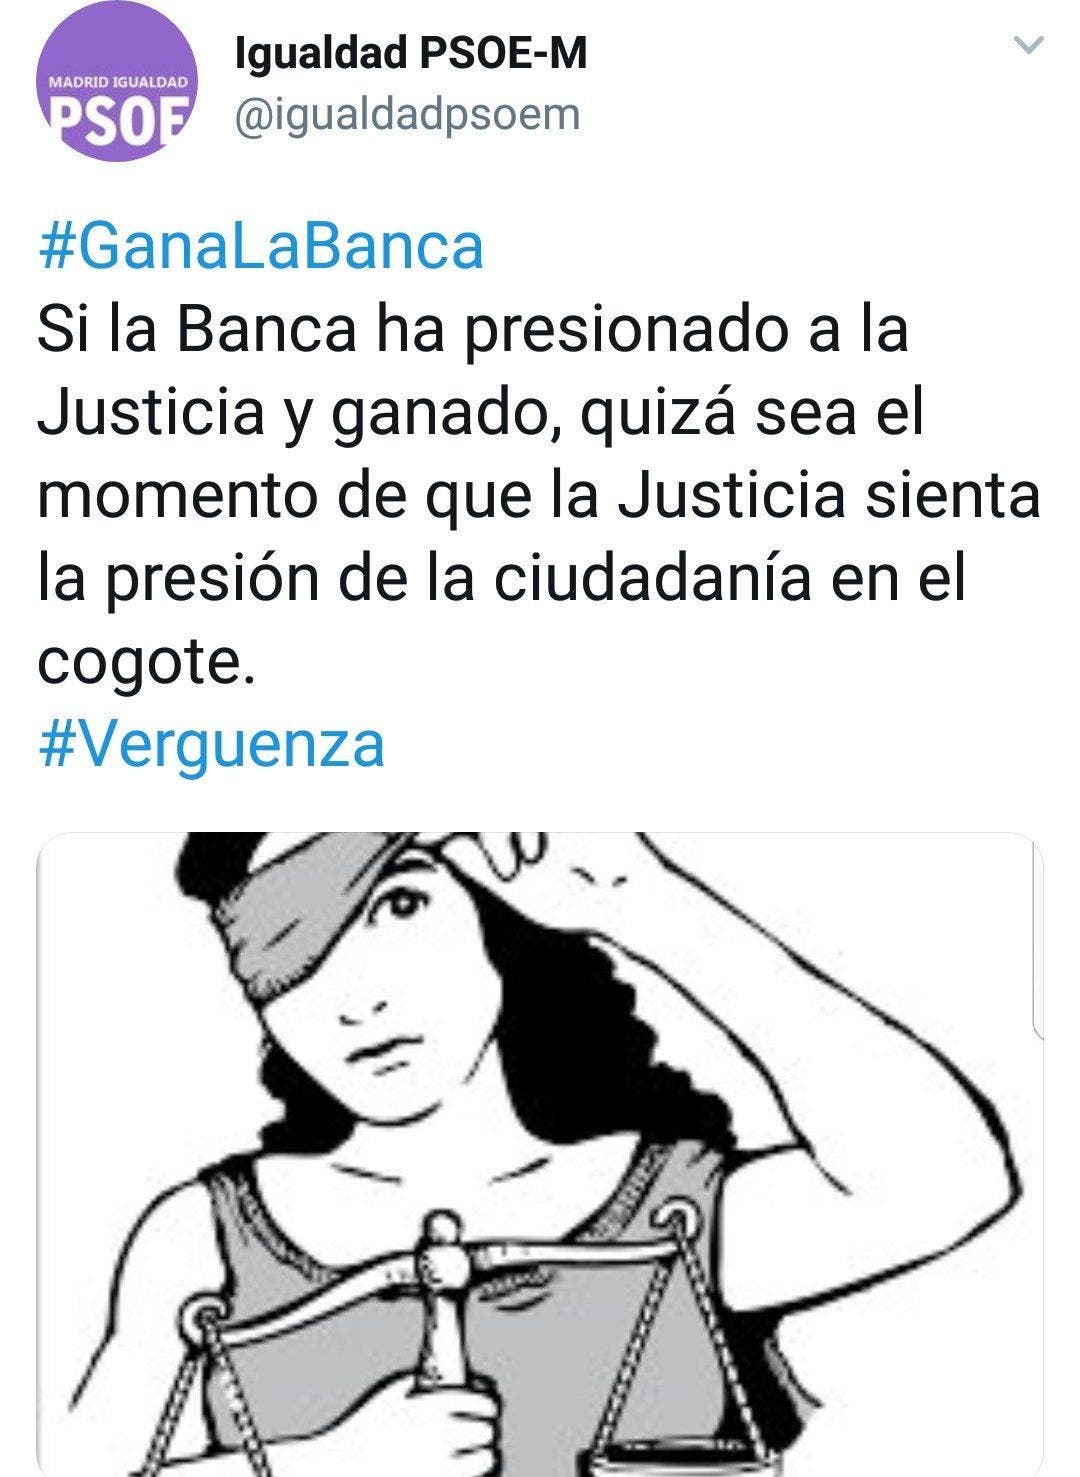 Mensaje escrito y borrado por la cuenta de Igualdad del PSOE. Twitter